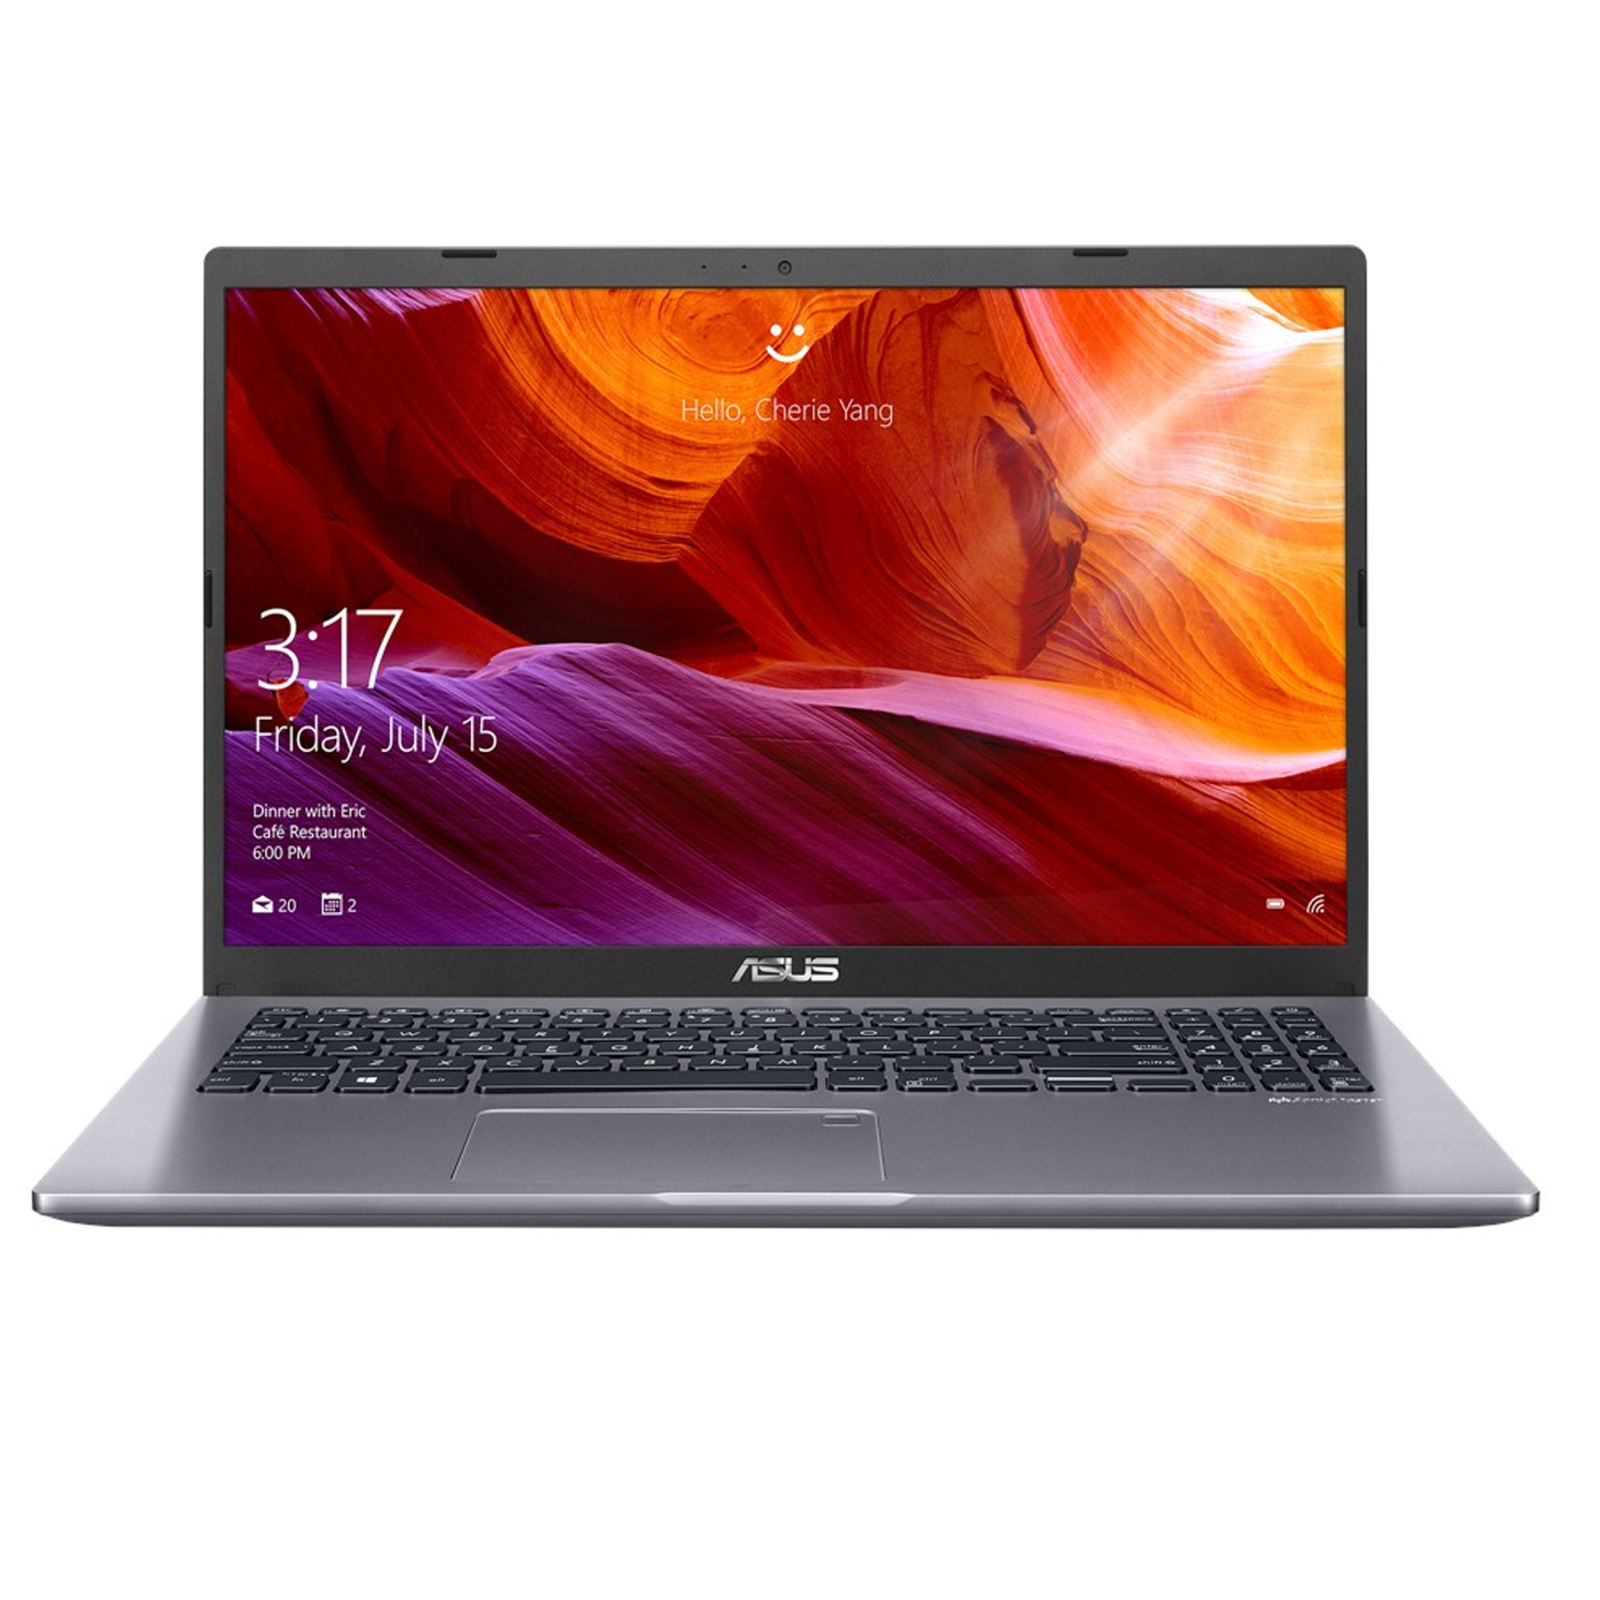  Asus R521JB-E Laptop